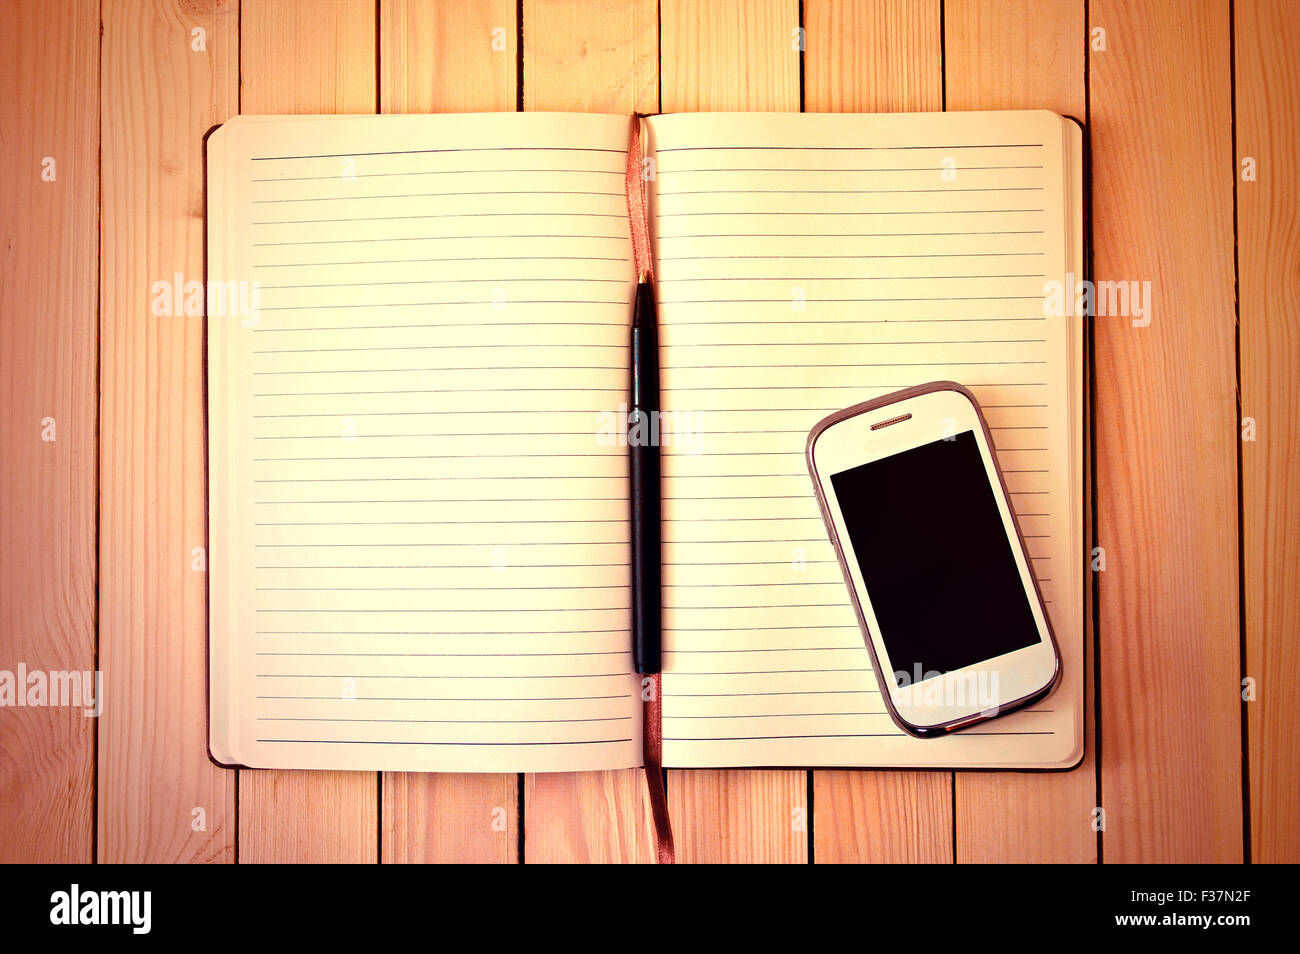 Teléfono celular blanco, una pluma y un cuaderno en la mesa de madera. Espacio de trabajo. Foto de stock